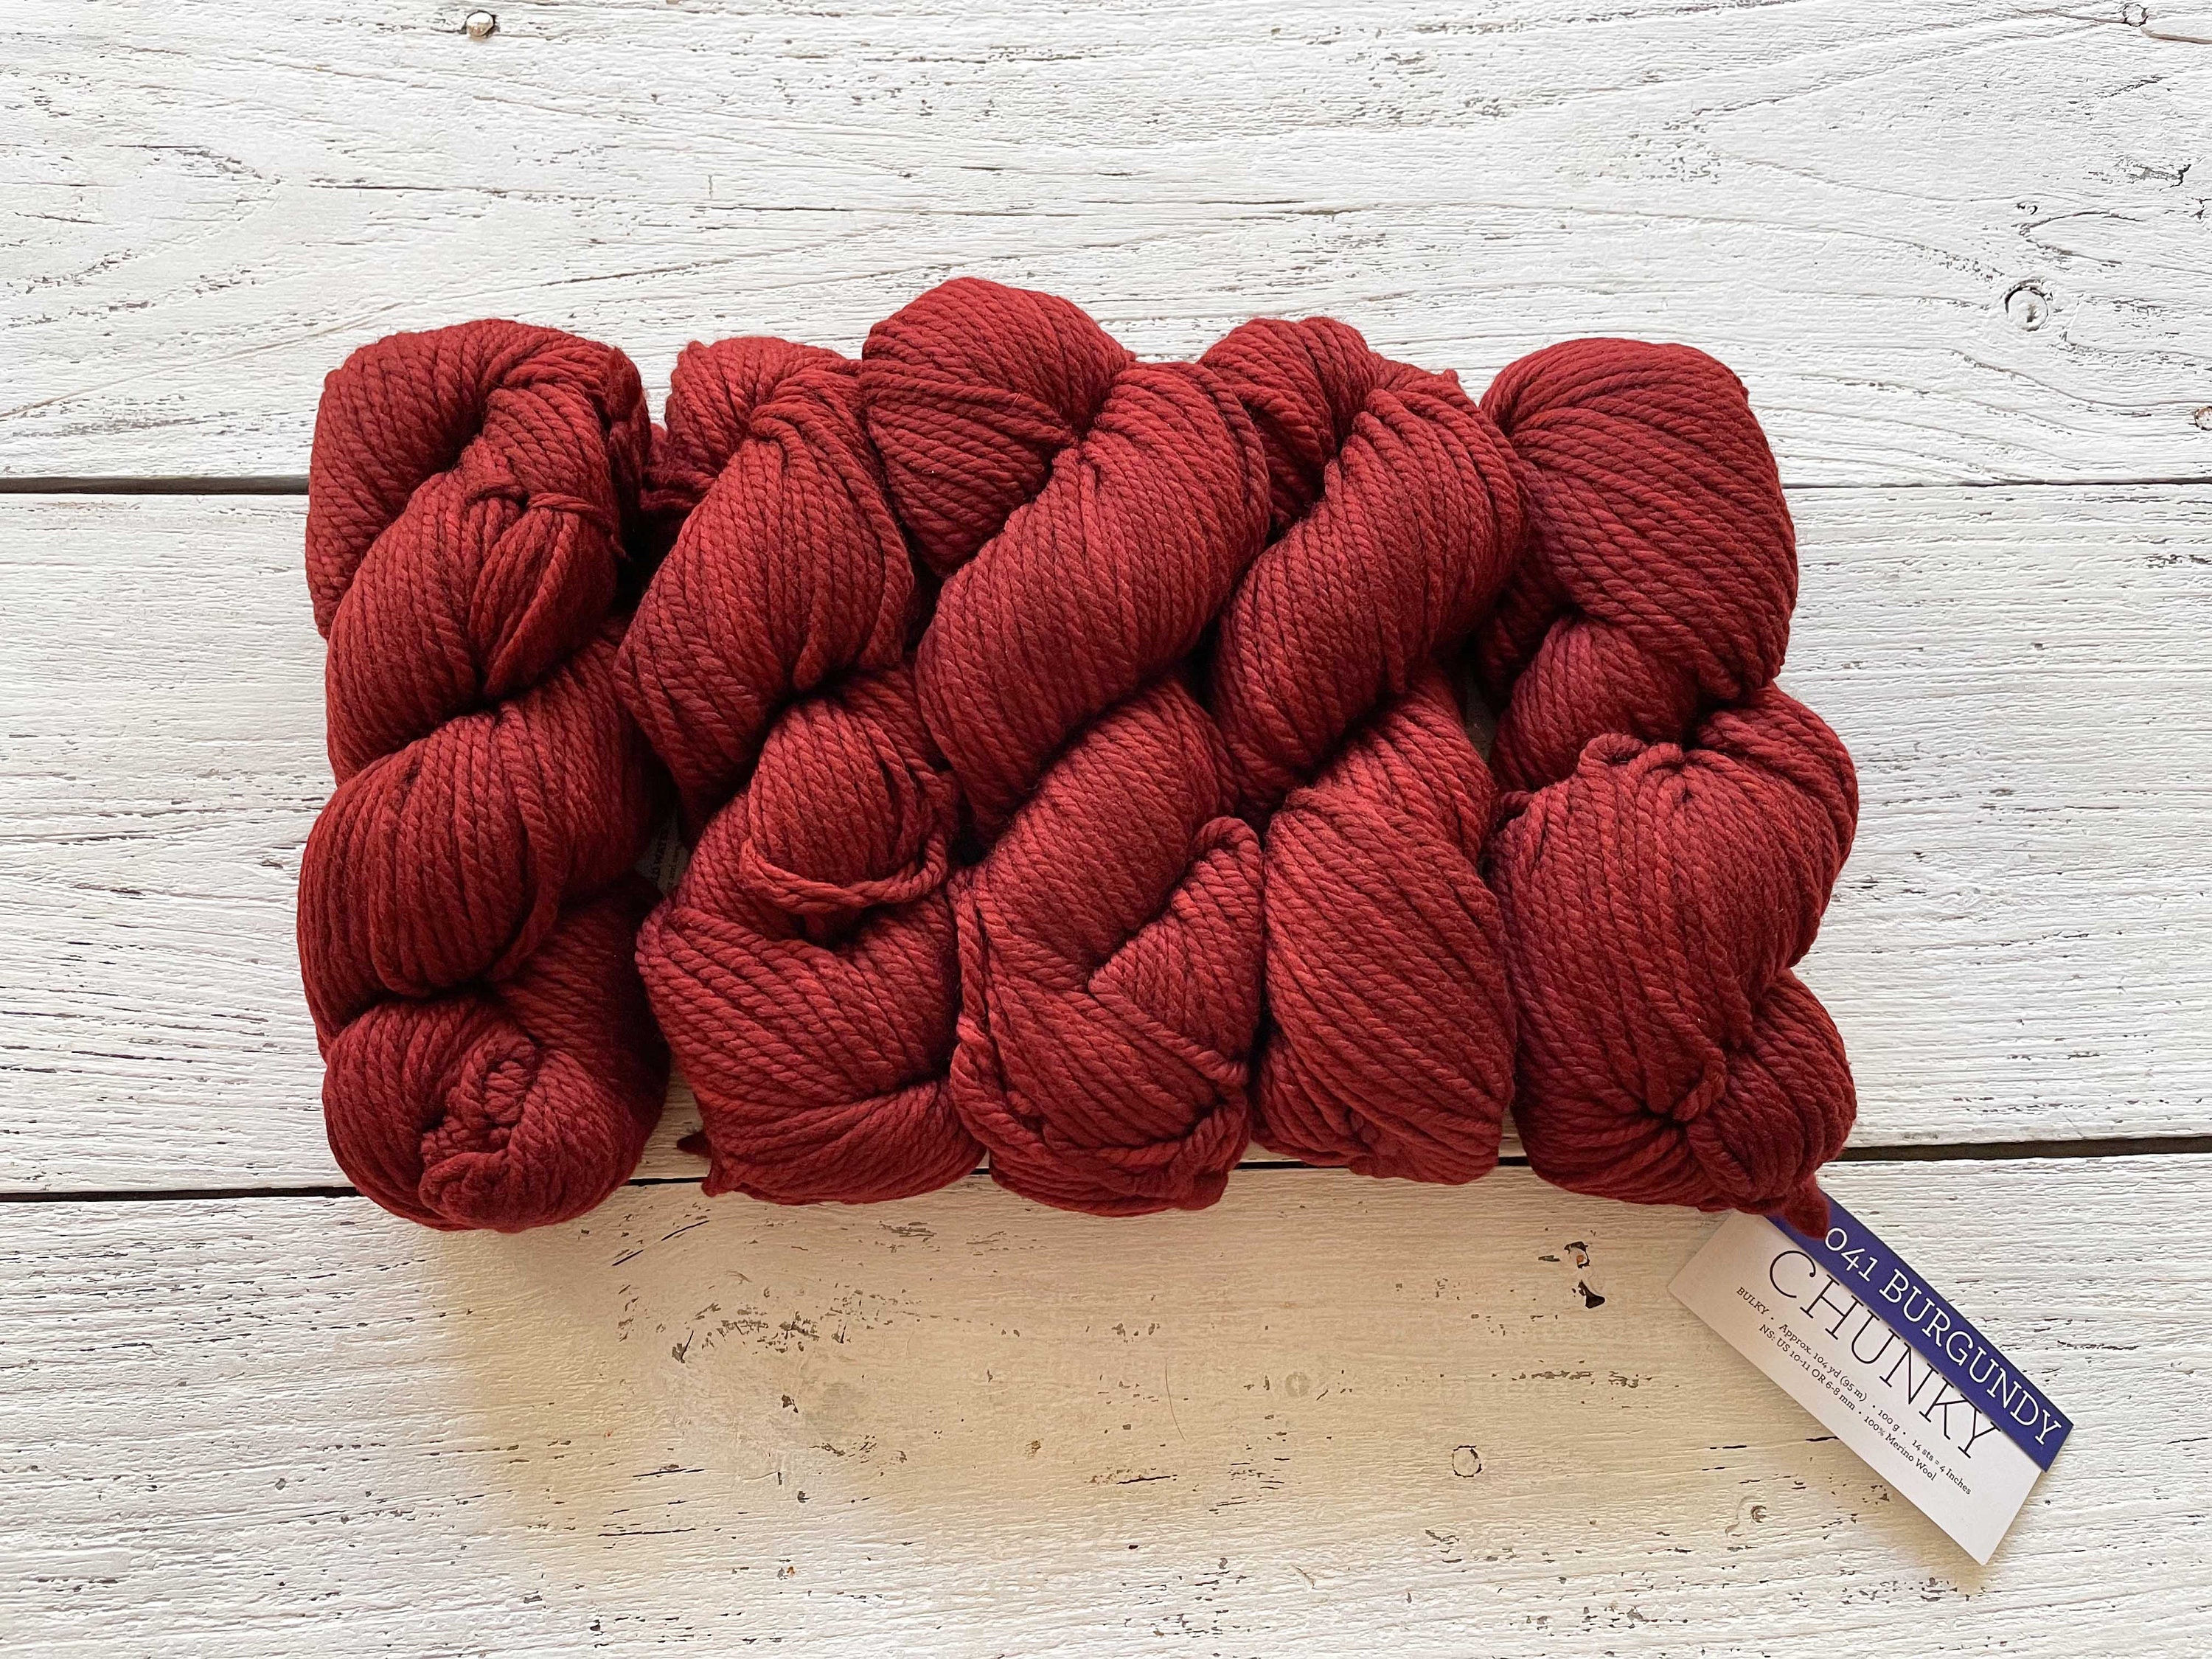 Malabrigo CHUNKY - FRANK OCHRE |Bulky Yarn, 3 Ply, 100% Merino Wool,  Malabrigo Yarn, Gift for Knitters or Crocheters